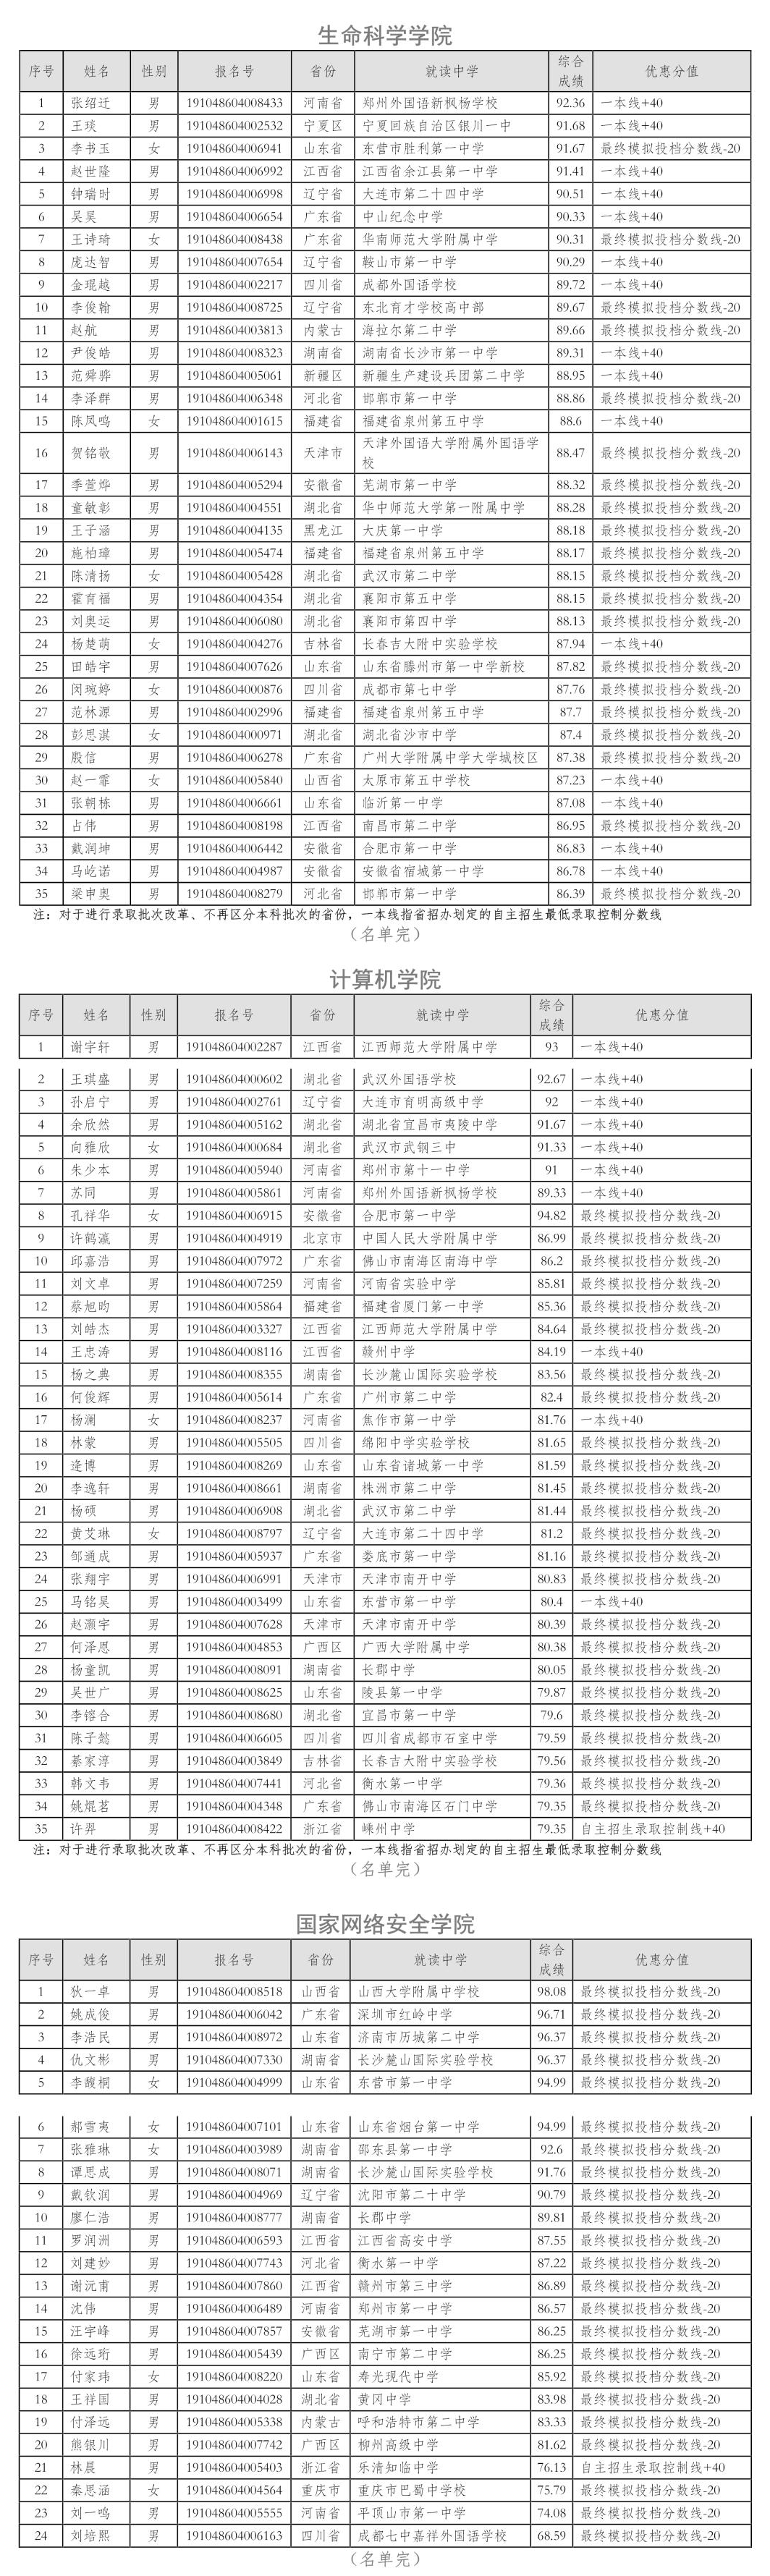 武汉大学2019年自主招生入选资格考生名单3